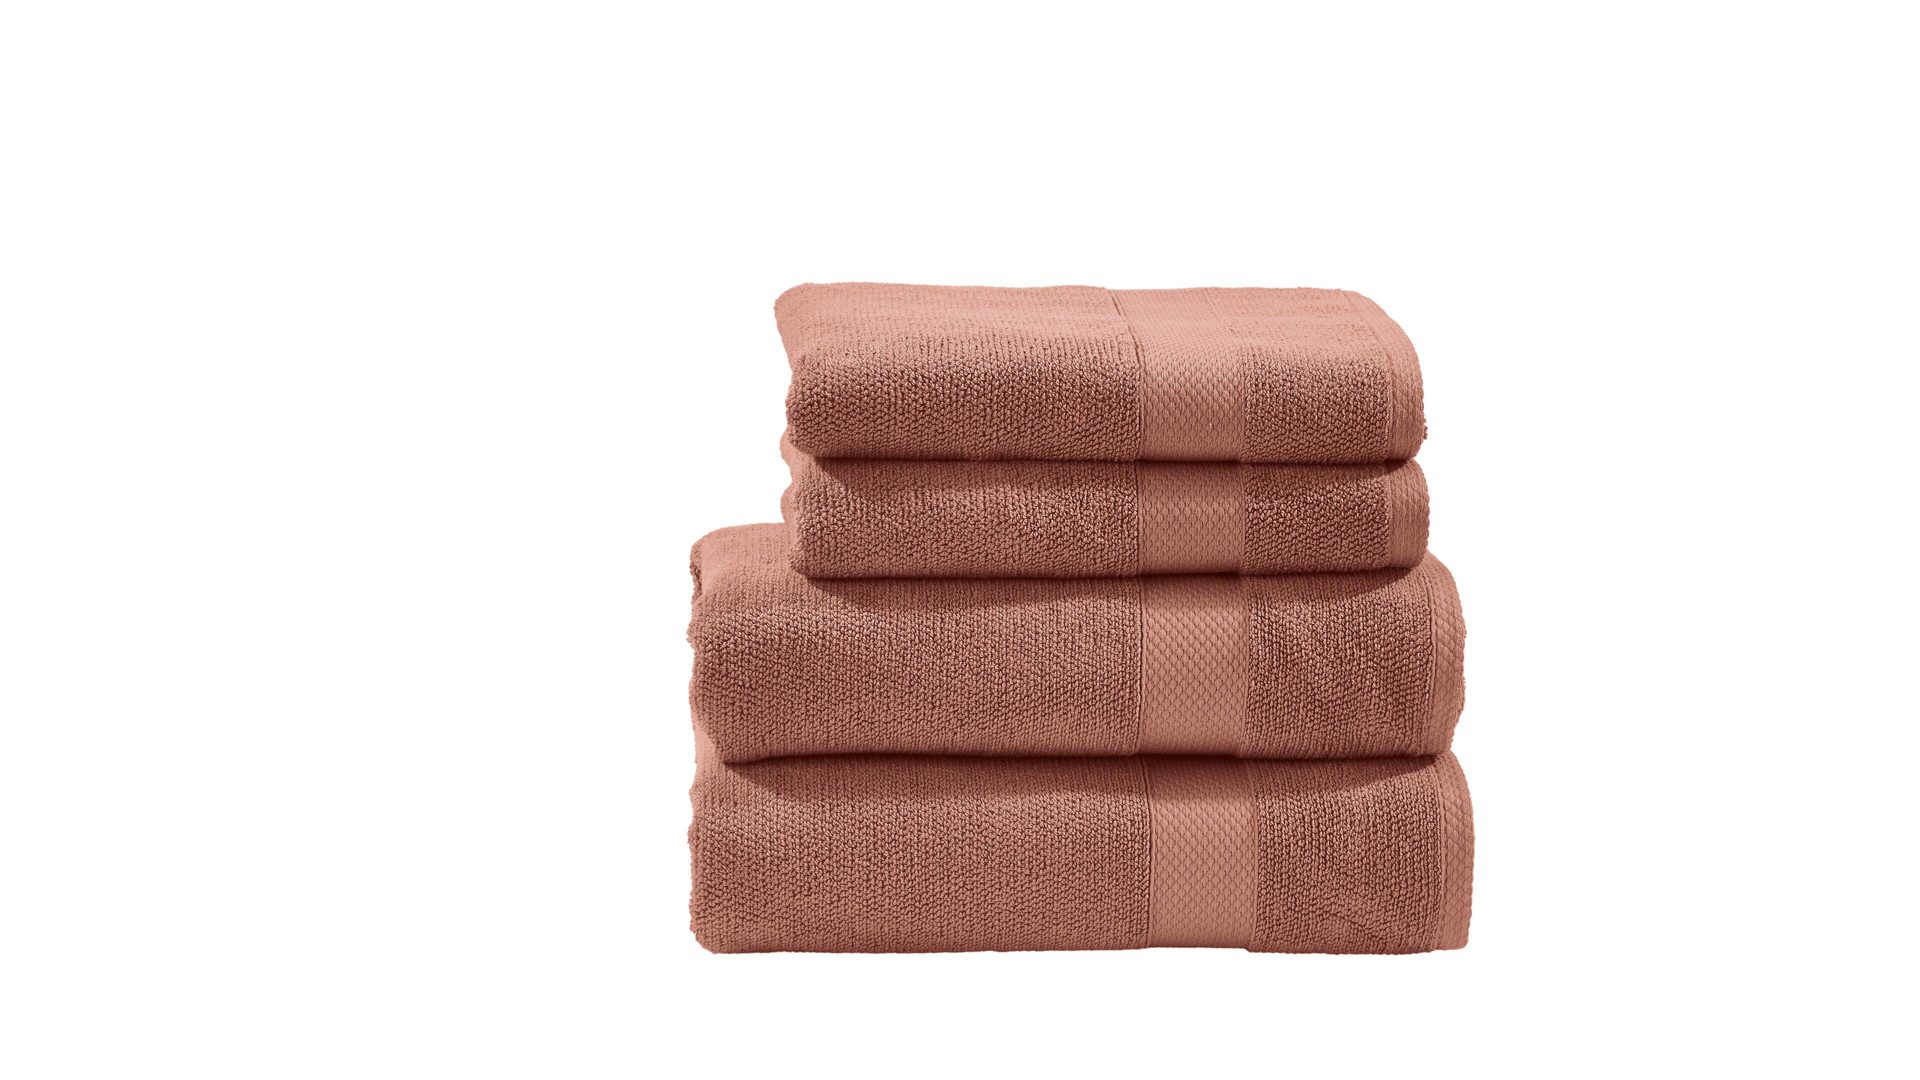 Handtuch-Set Done.® aus Stoff in Orange done.® Handtuch-Set Deluxe - Heimtextilien wüstensandfarbene Baumwolle – vierteilig